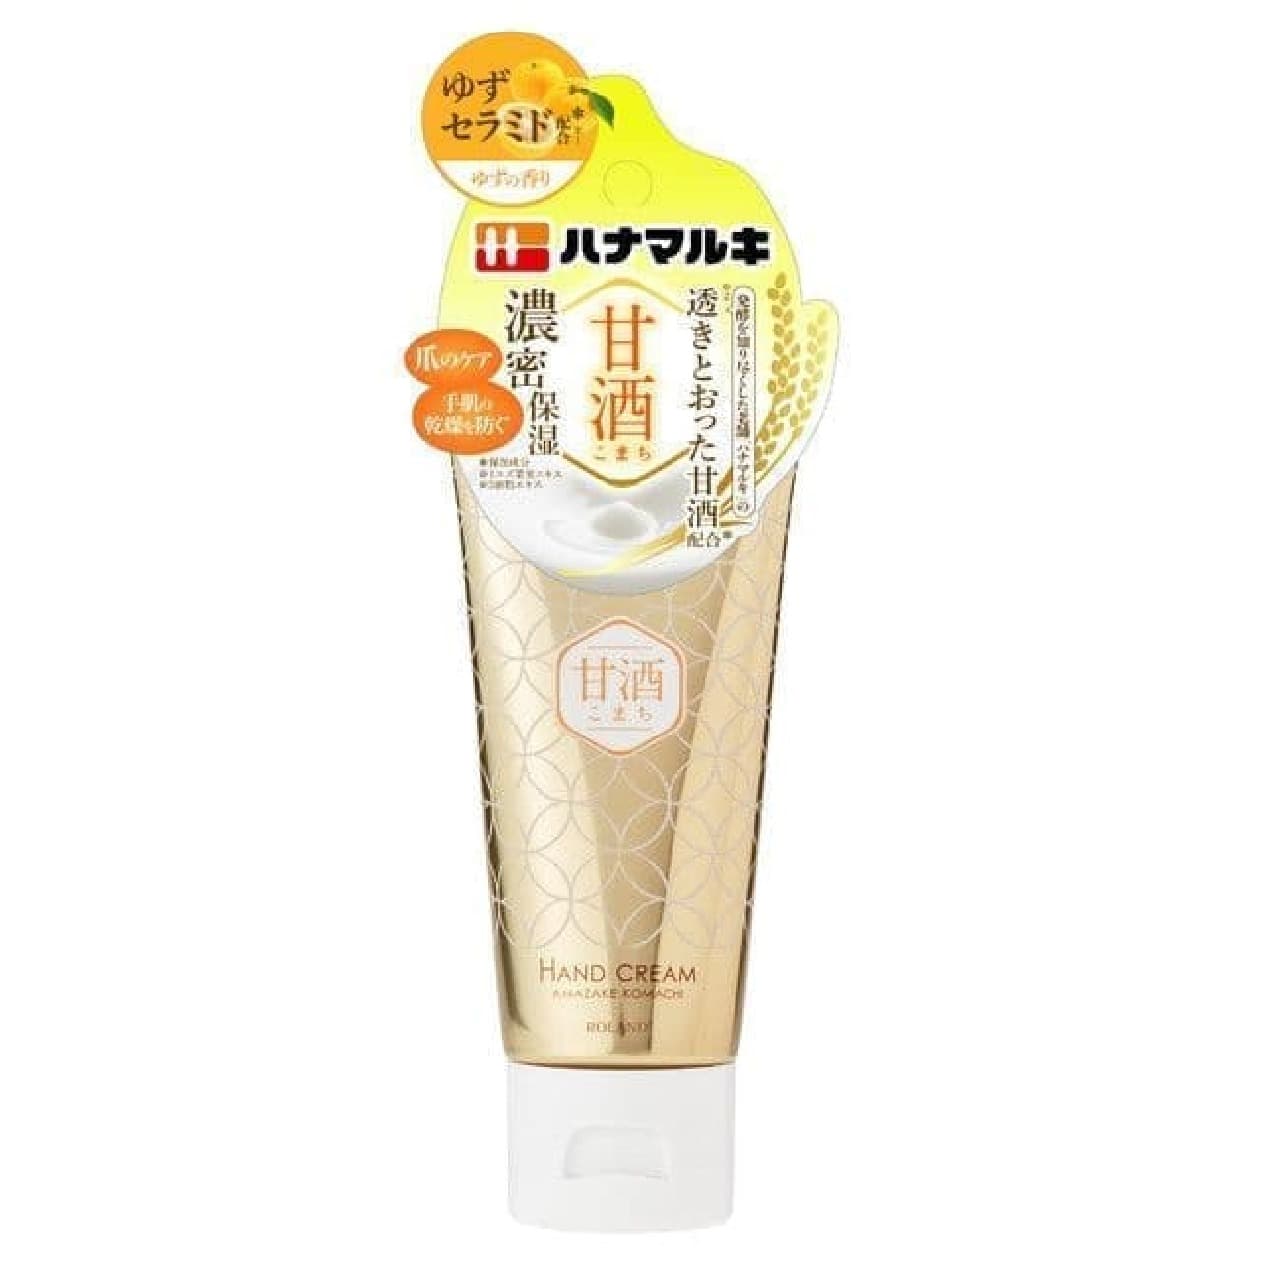 Amazake Komachi Rich Hand Cream Yuzu scent